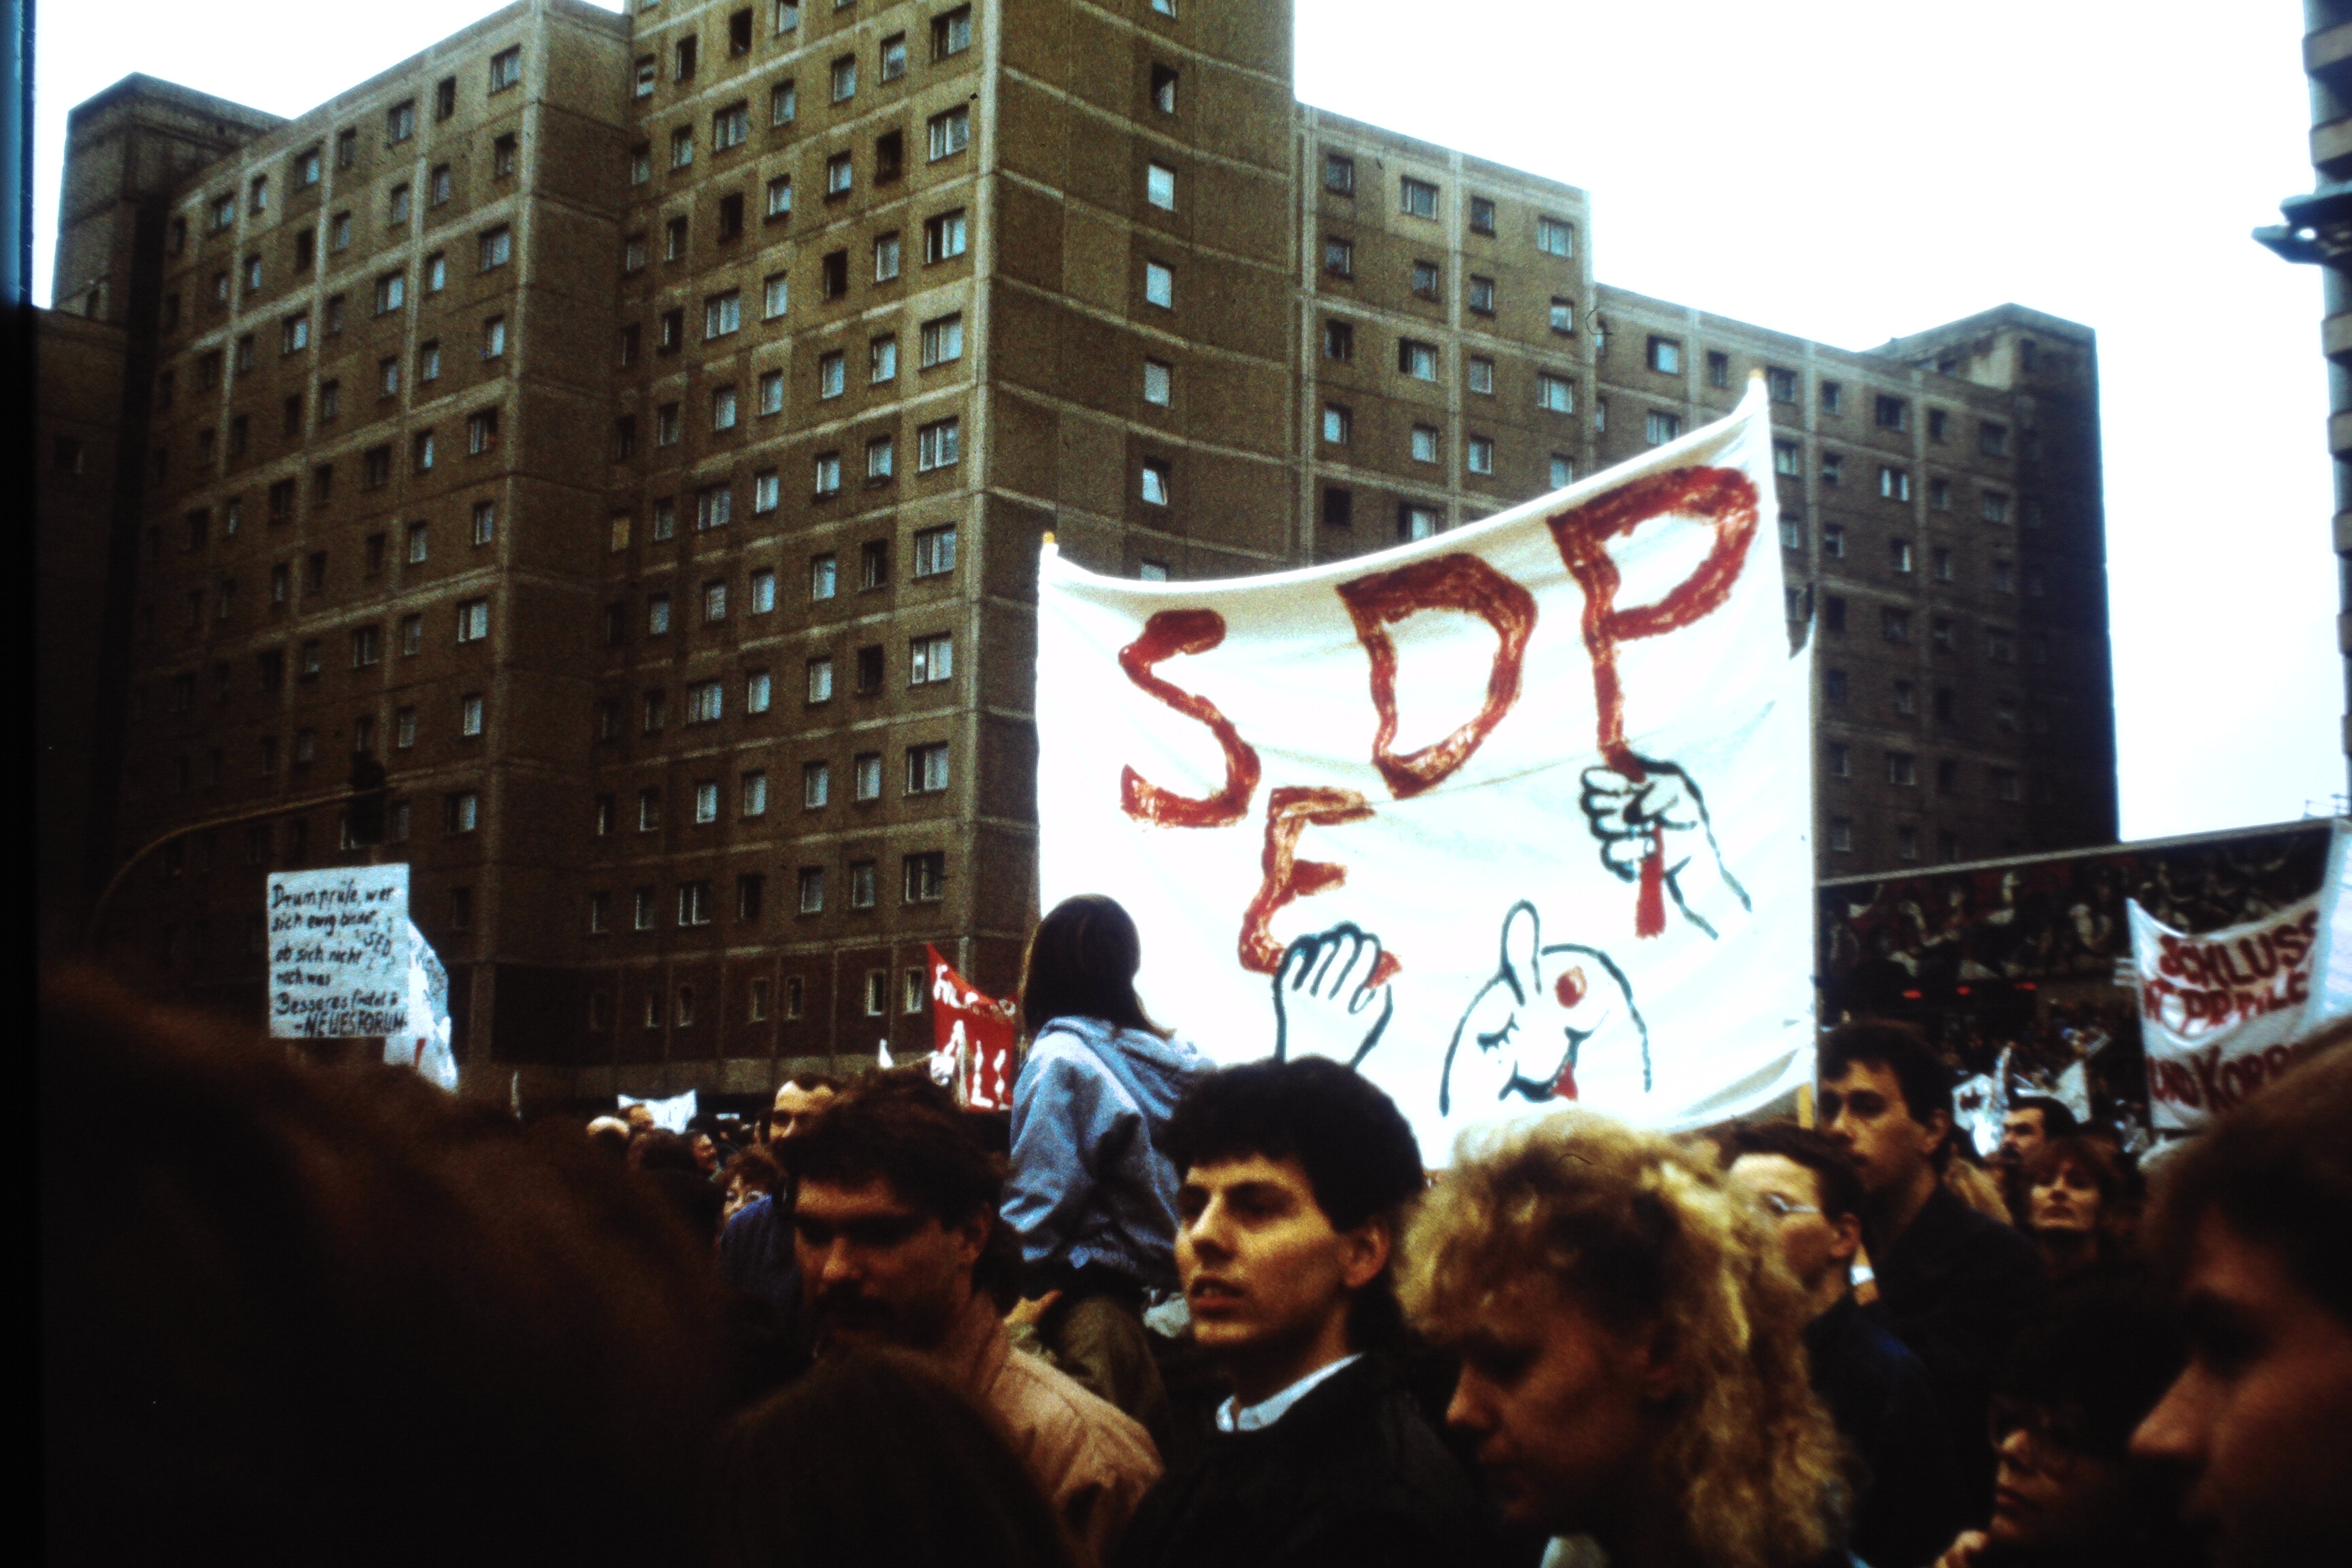 Großdemonstration in Ost-Berlin am 04. November 1989: Transparent mit der Aufschrift "SEDP" (DDR Geschichtsmuseum im Dokumentationszentrum Perleberg CC BY-SA)